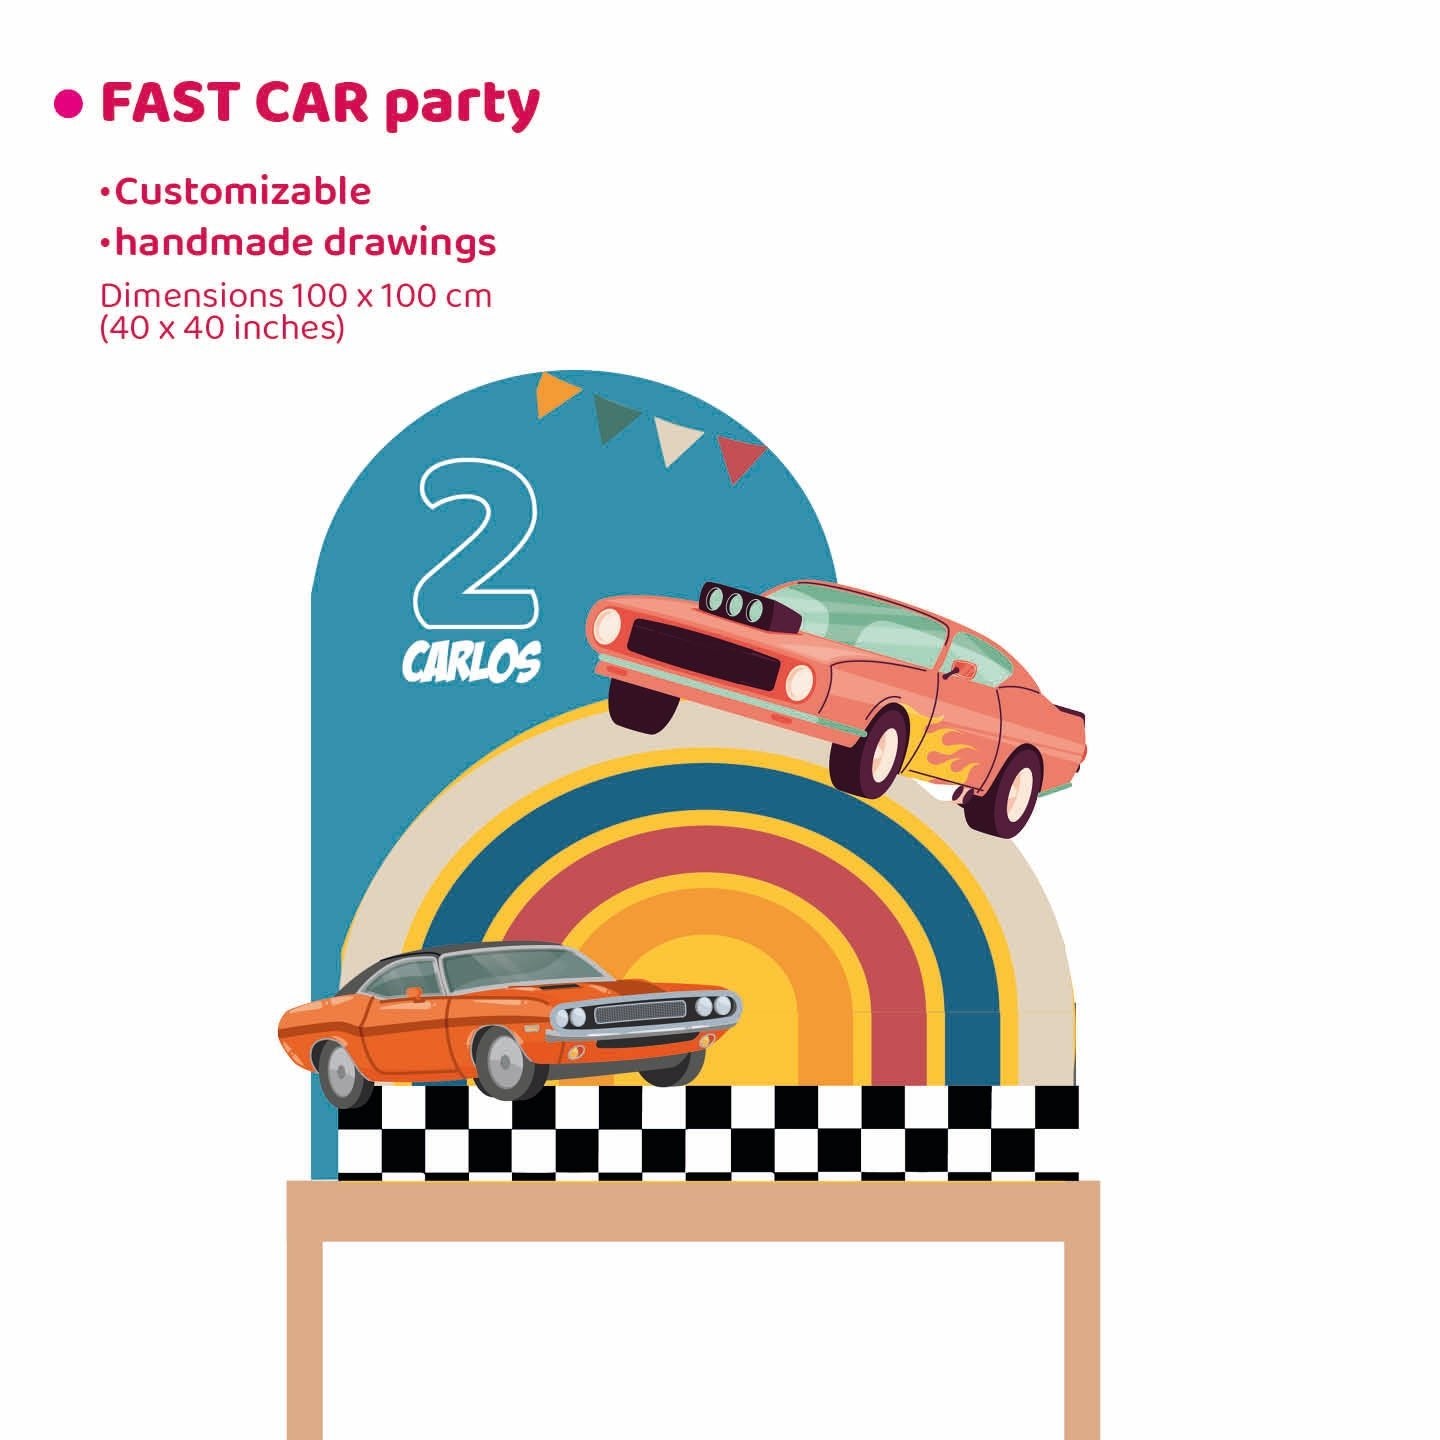 FAST CAR PARTY da appoggio | Festa a tema | Decori compleanno bimbo - Peekaboo